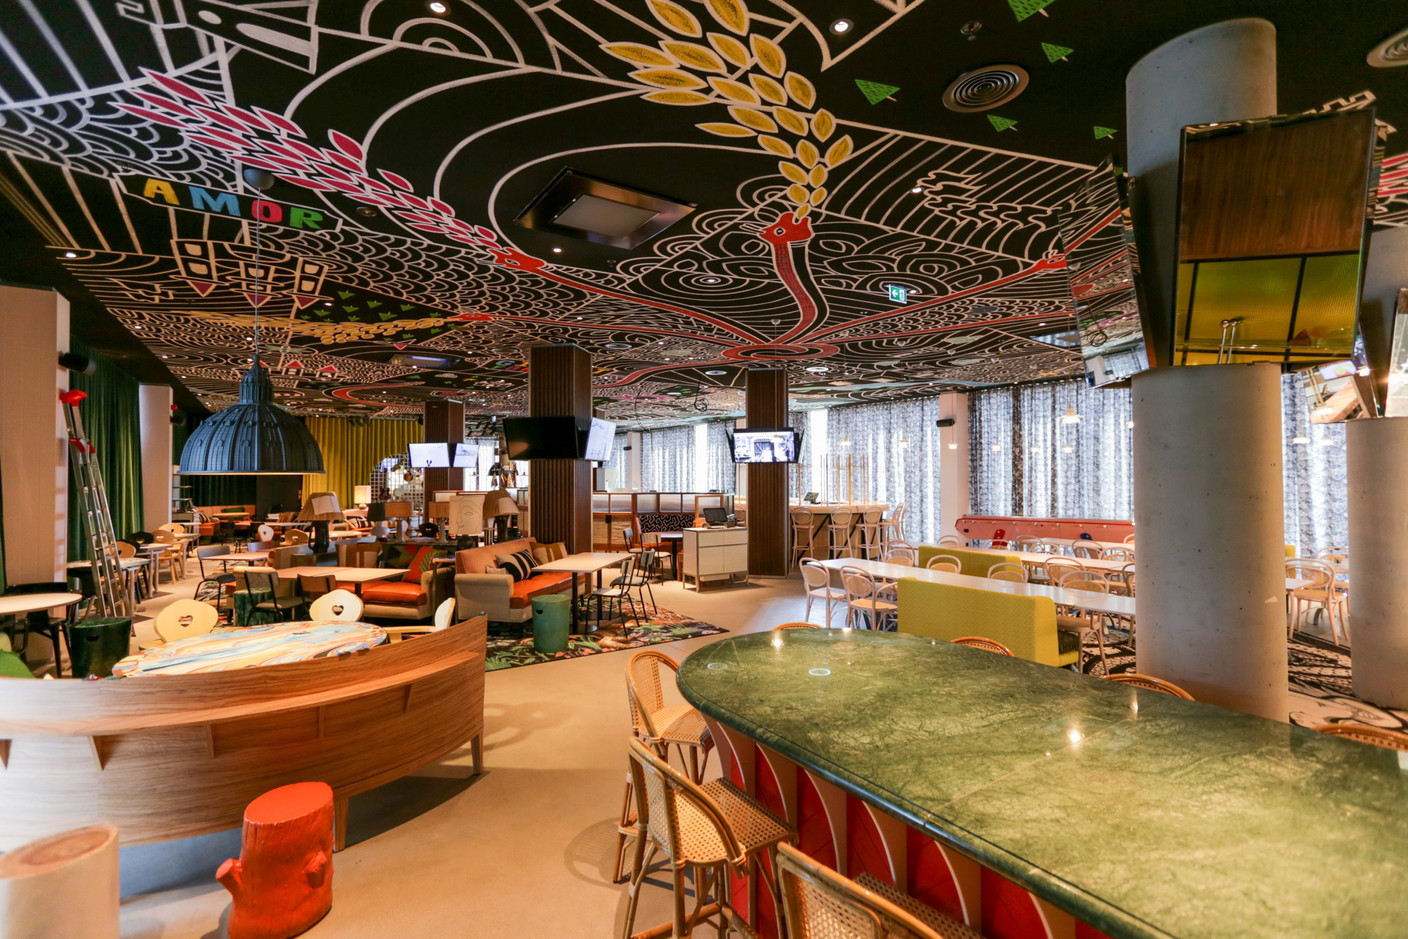 La vaste salle de restaurant est organisée en différentes ambiances, unies par un plafond peint réalisé par Beni Lloyds. (Photo: Romain Gamba / Maison Moderne)